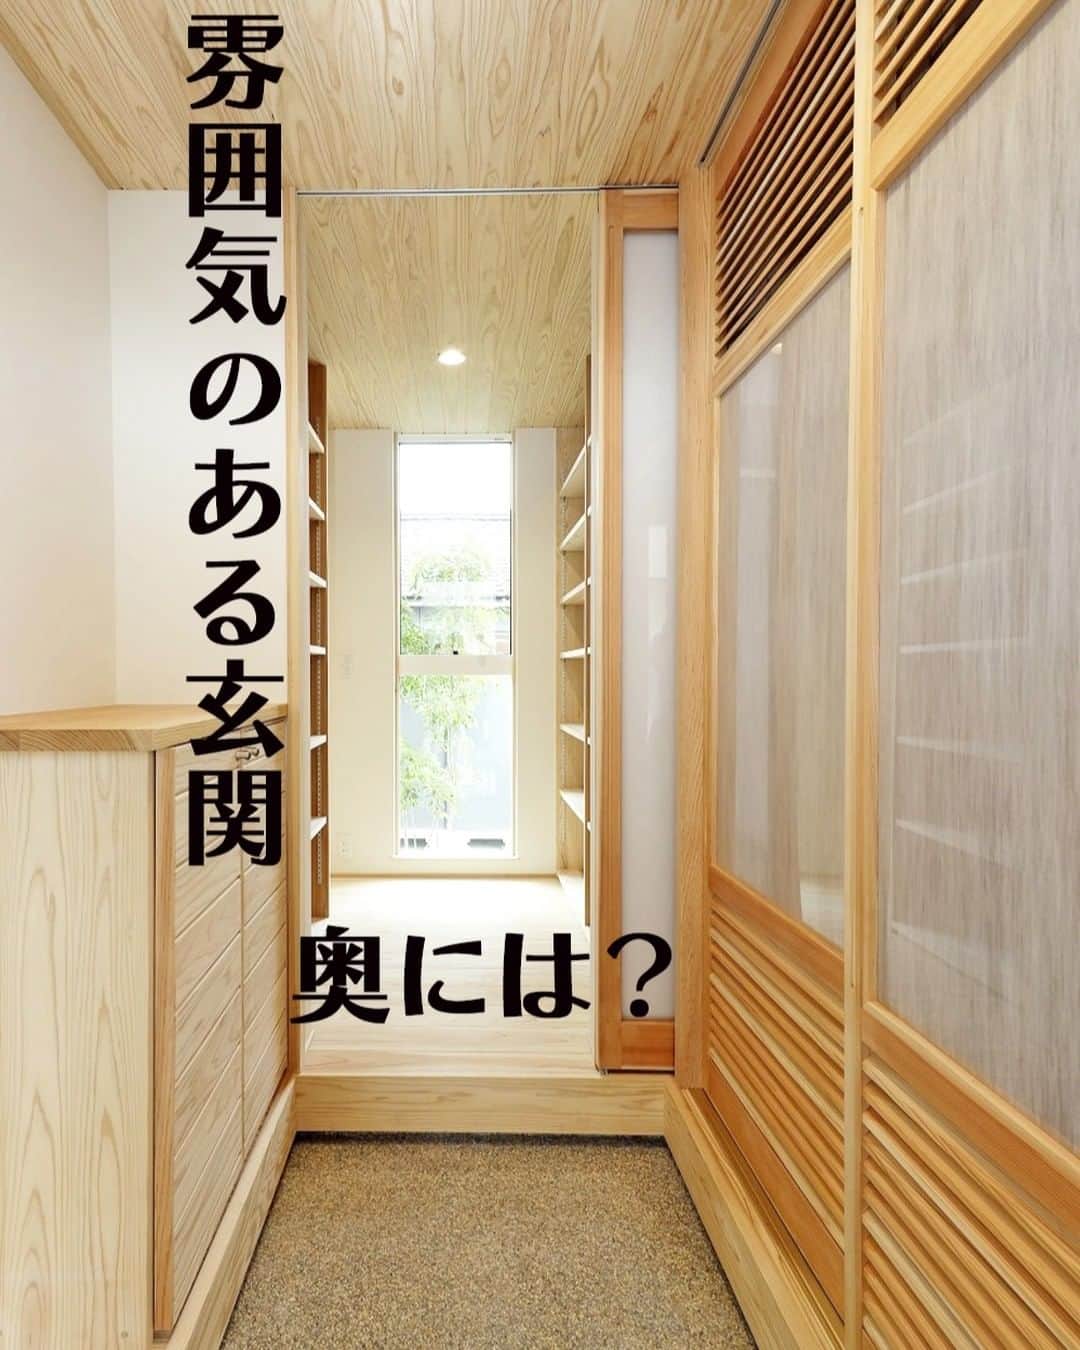 Yasuhiro Arimuraのインスタグラム：「玄関に入ると同じトーンの木で作られていて、スッキリとした印象です。 三和土は雰囲気のある砂利仕上げ。和の趣があちらこちらに散りばめられています。玄関から真正面のガラスには、植栽が1枚の絵のように見えて素敵。  玄関から入ってすぐのとこにある、靴箱兼収納。天井まである大容量の造作建具です。棚は可動式で物に合わせて高さを変えられます。 リビング収納にもなっていて、部屋がスッキリしますよ。 急な来客でも隠せるのが魅力です。  more photos... 👉 @yasuhiro.arimura #光と風 #sumais #リビング #明るいリビング #注文住宅 #家づくり #回遊性のある間取り #造作建具 #ウッドデッキ #マイホーム #マイホーム計画 #木の家 #住まい #新築 #オーダーメイド住宅 #鹿児島 #工務店 #工務店がつくる家 #工務店だからつくれる家 #設計事務所 #子育て #自然素材 #賃挽き製材 #デザイン #暮らし #暮らしを楽しむ #シンプルな暮らし #丁寧な暮らし #田舎暮らし #instahouse」